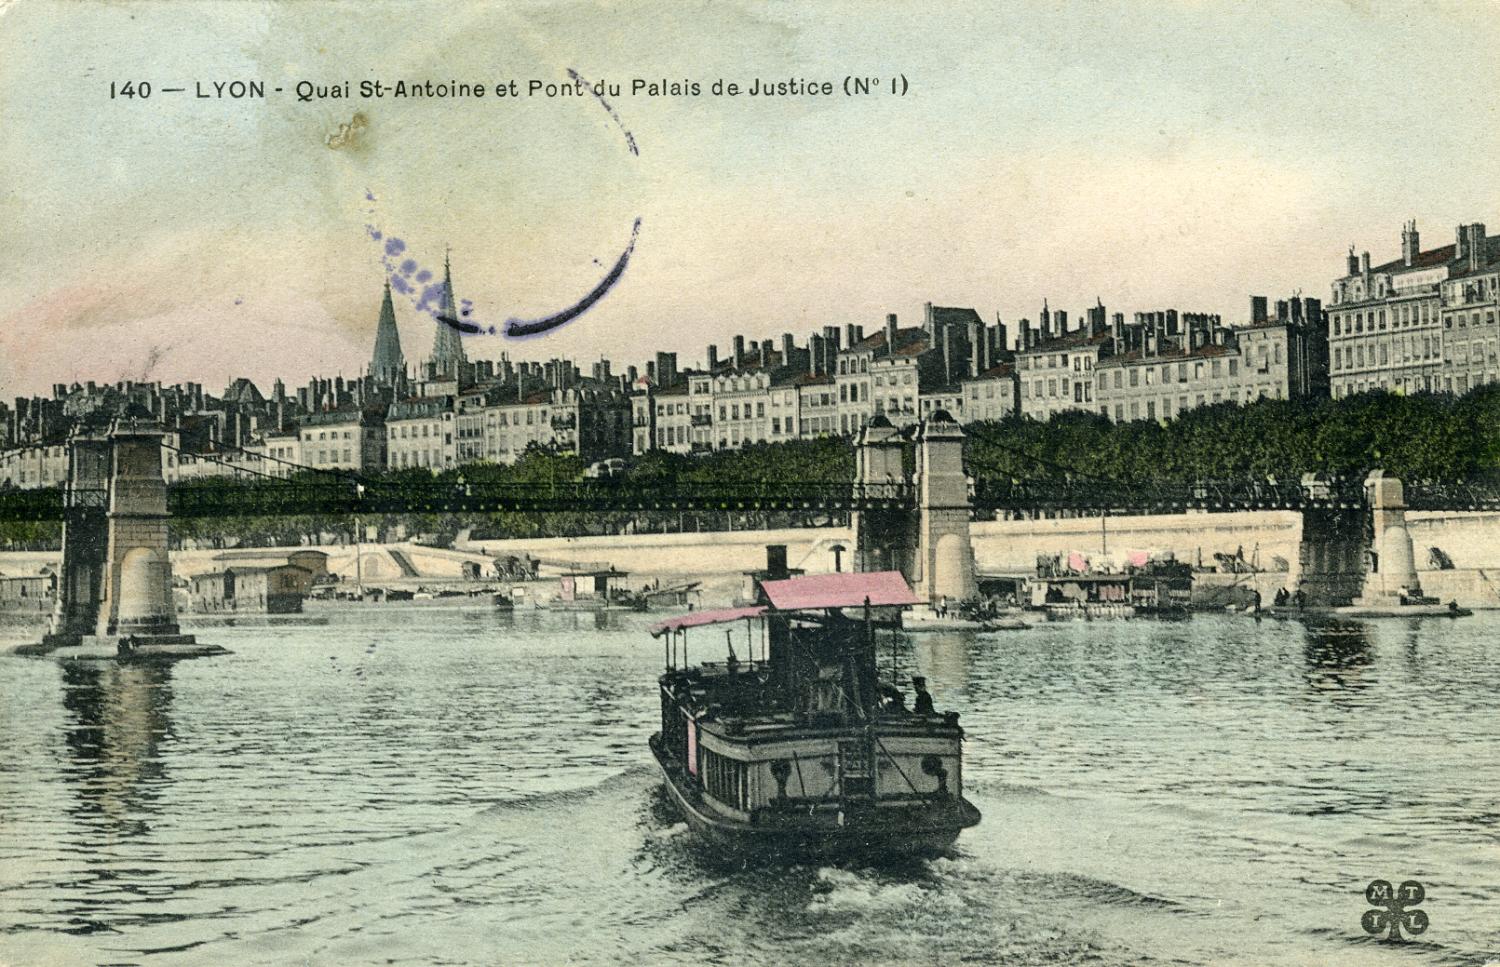 Lyon - Quai St-Antoine et Pont du Palais de Justice